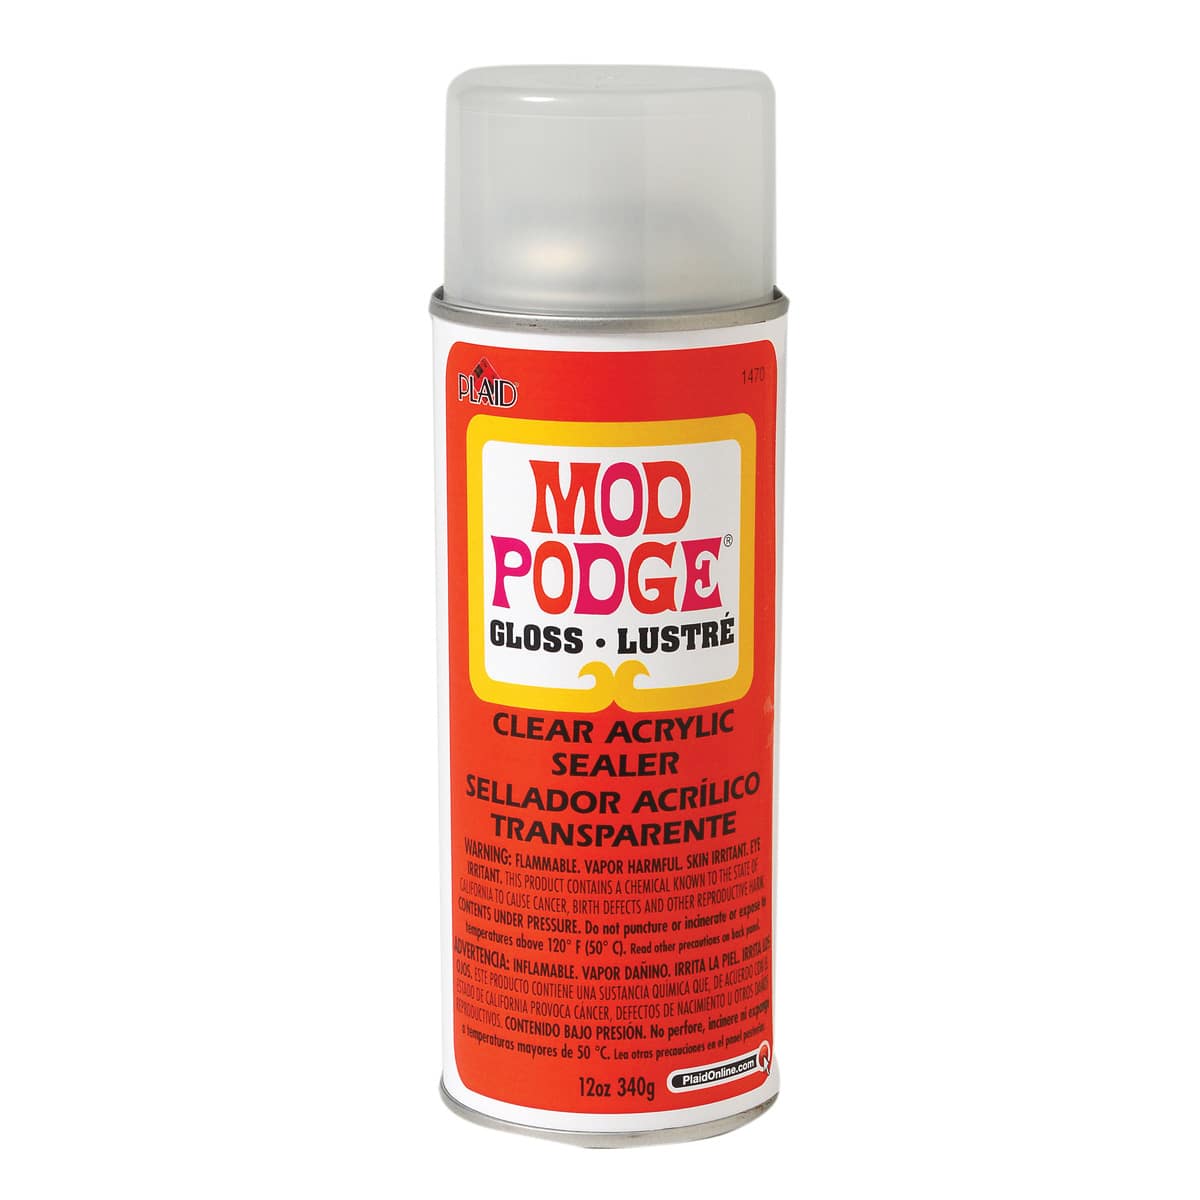 Mod Podge® Clear Acrylic Sealer, Gloss